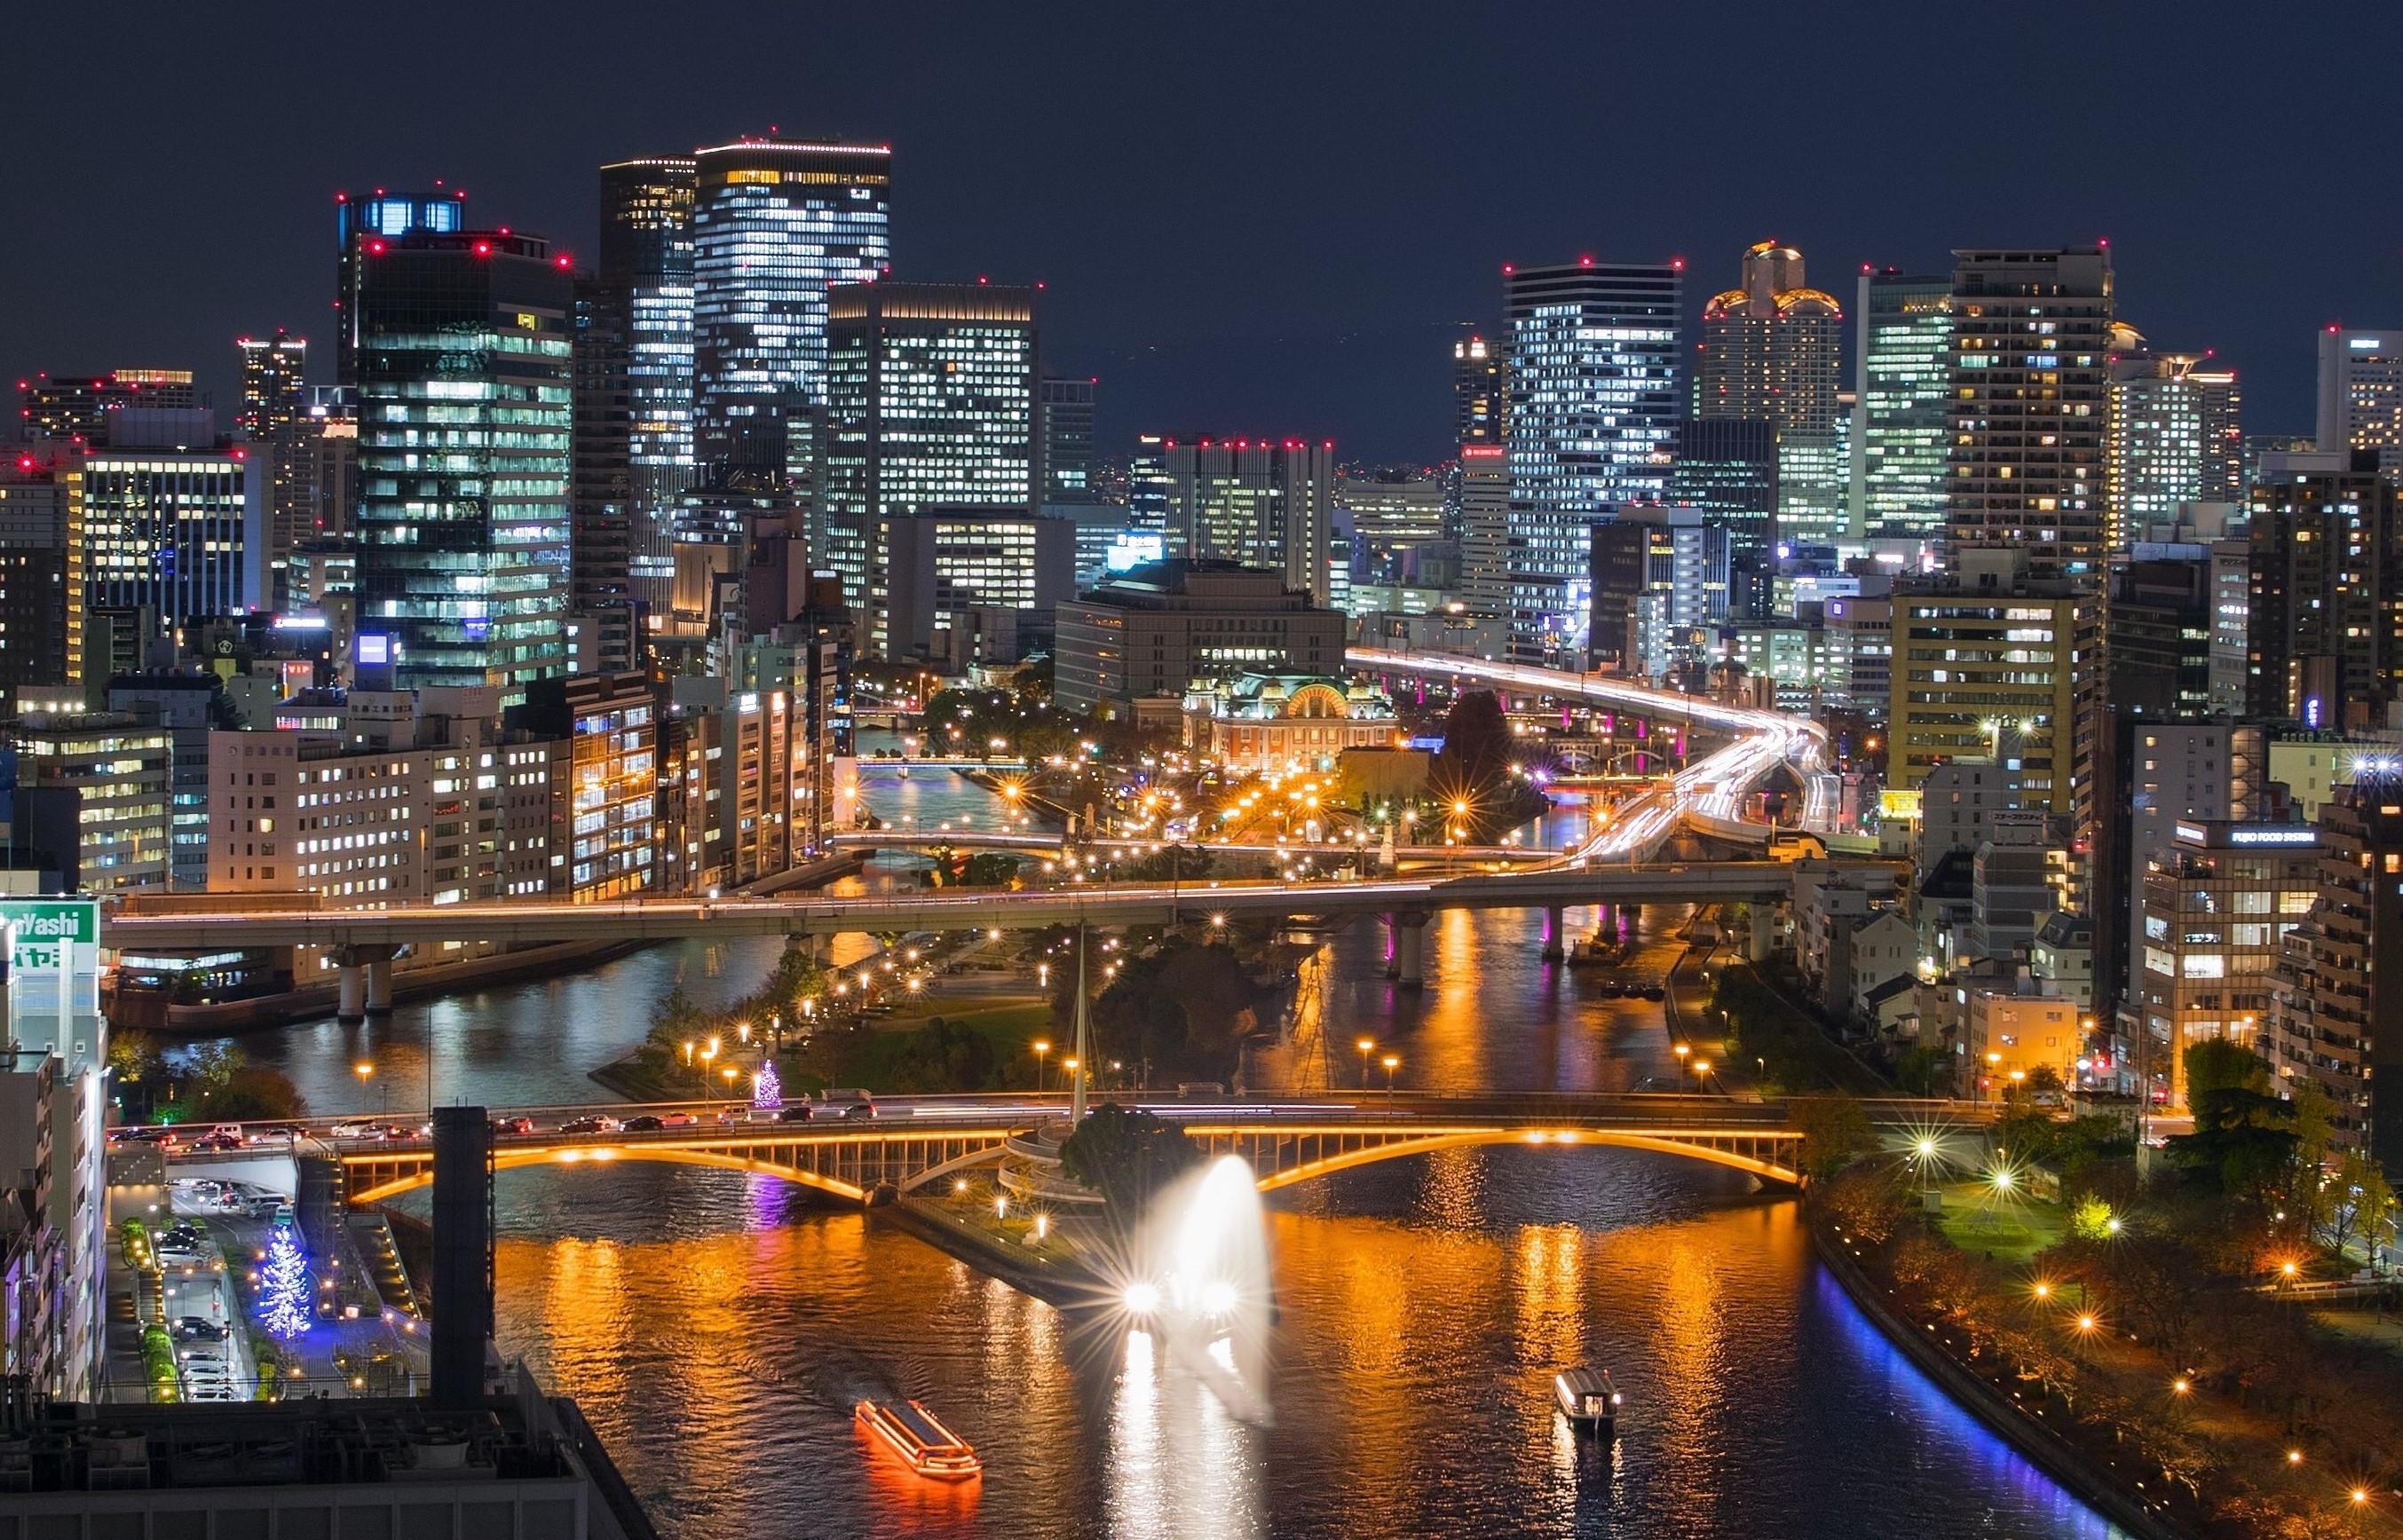 大城市,作为中部地方的商业,工业,教育和交通中心,既有不输东京的繁华